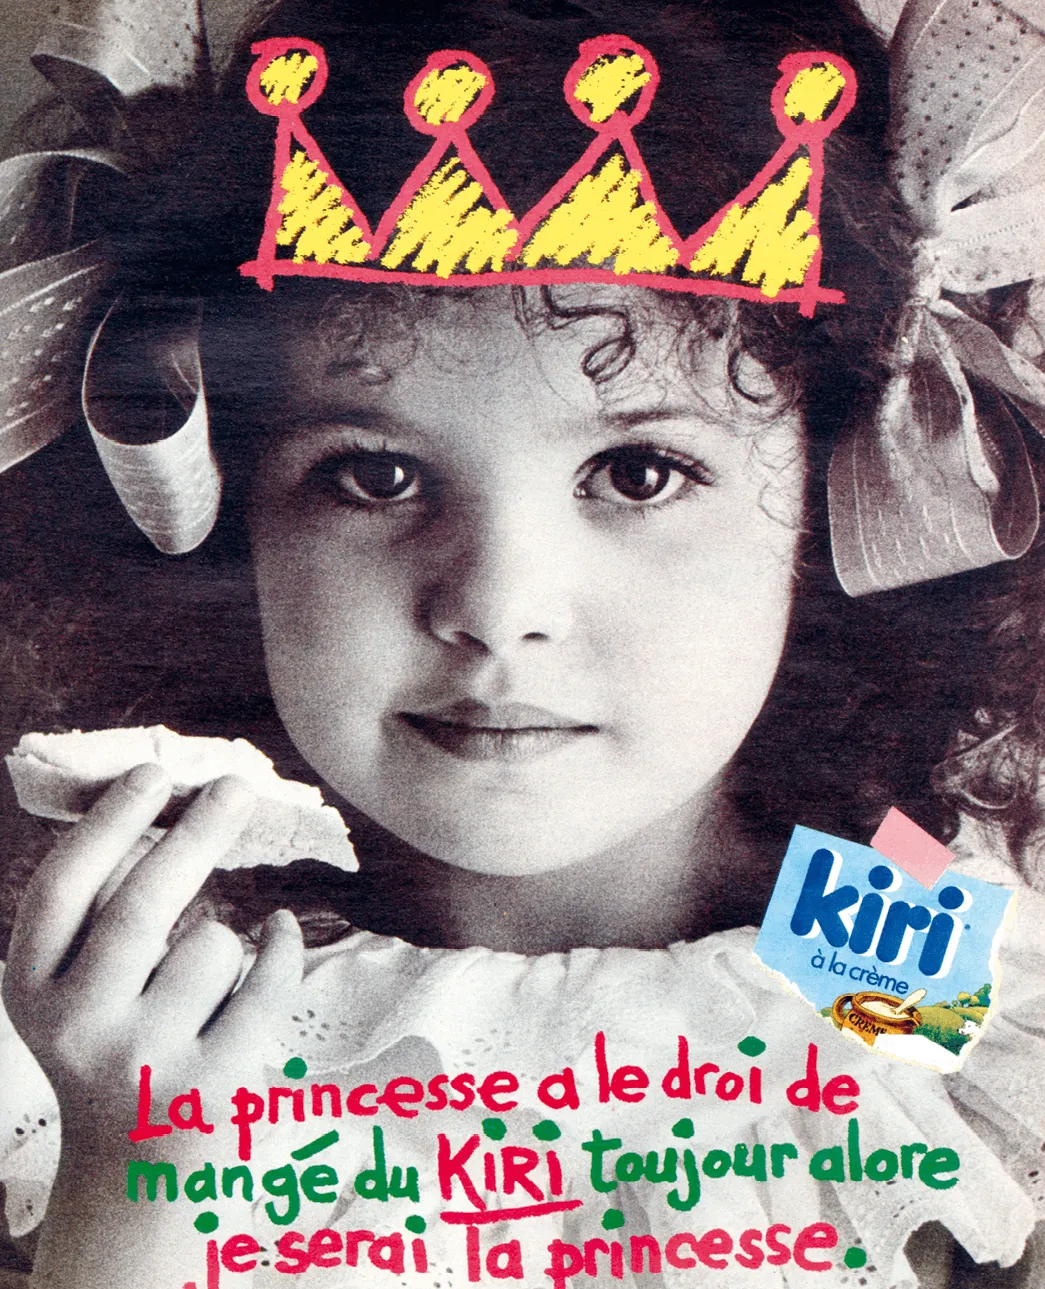 Publicité pour
la marque
fromagère Kiri,
1981.